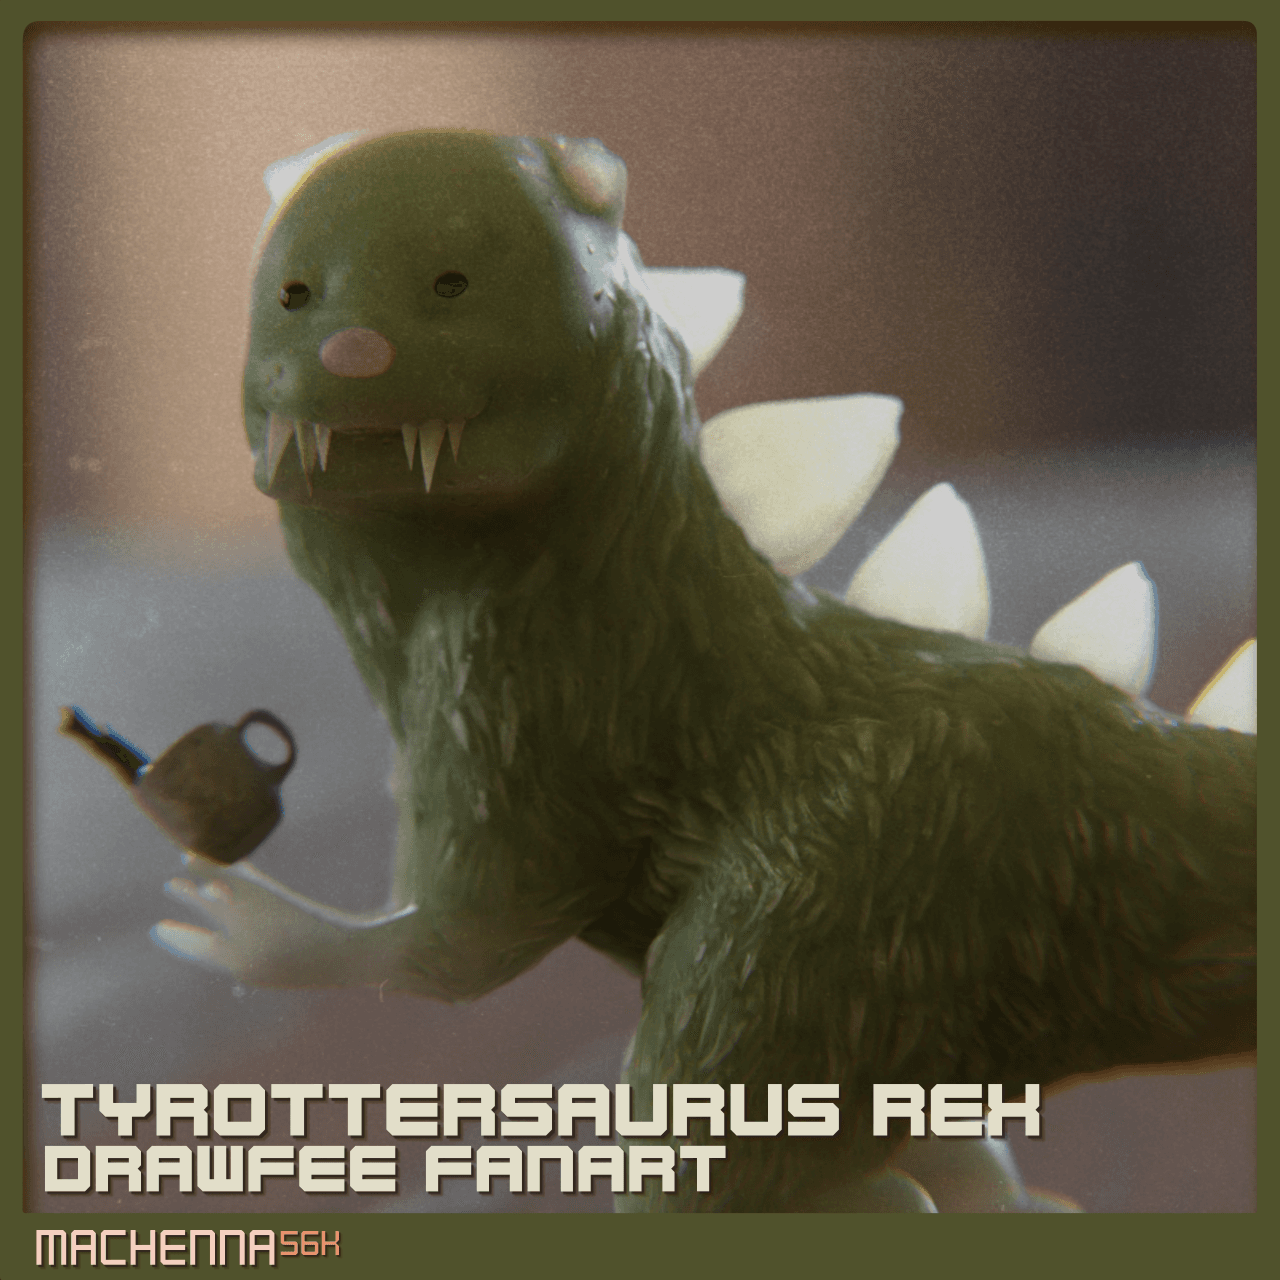 Tyrottersaurus Rex | Drawfee Fanart 3d model